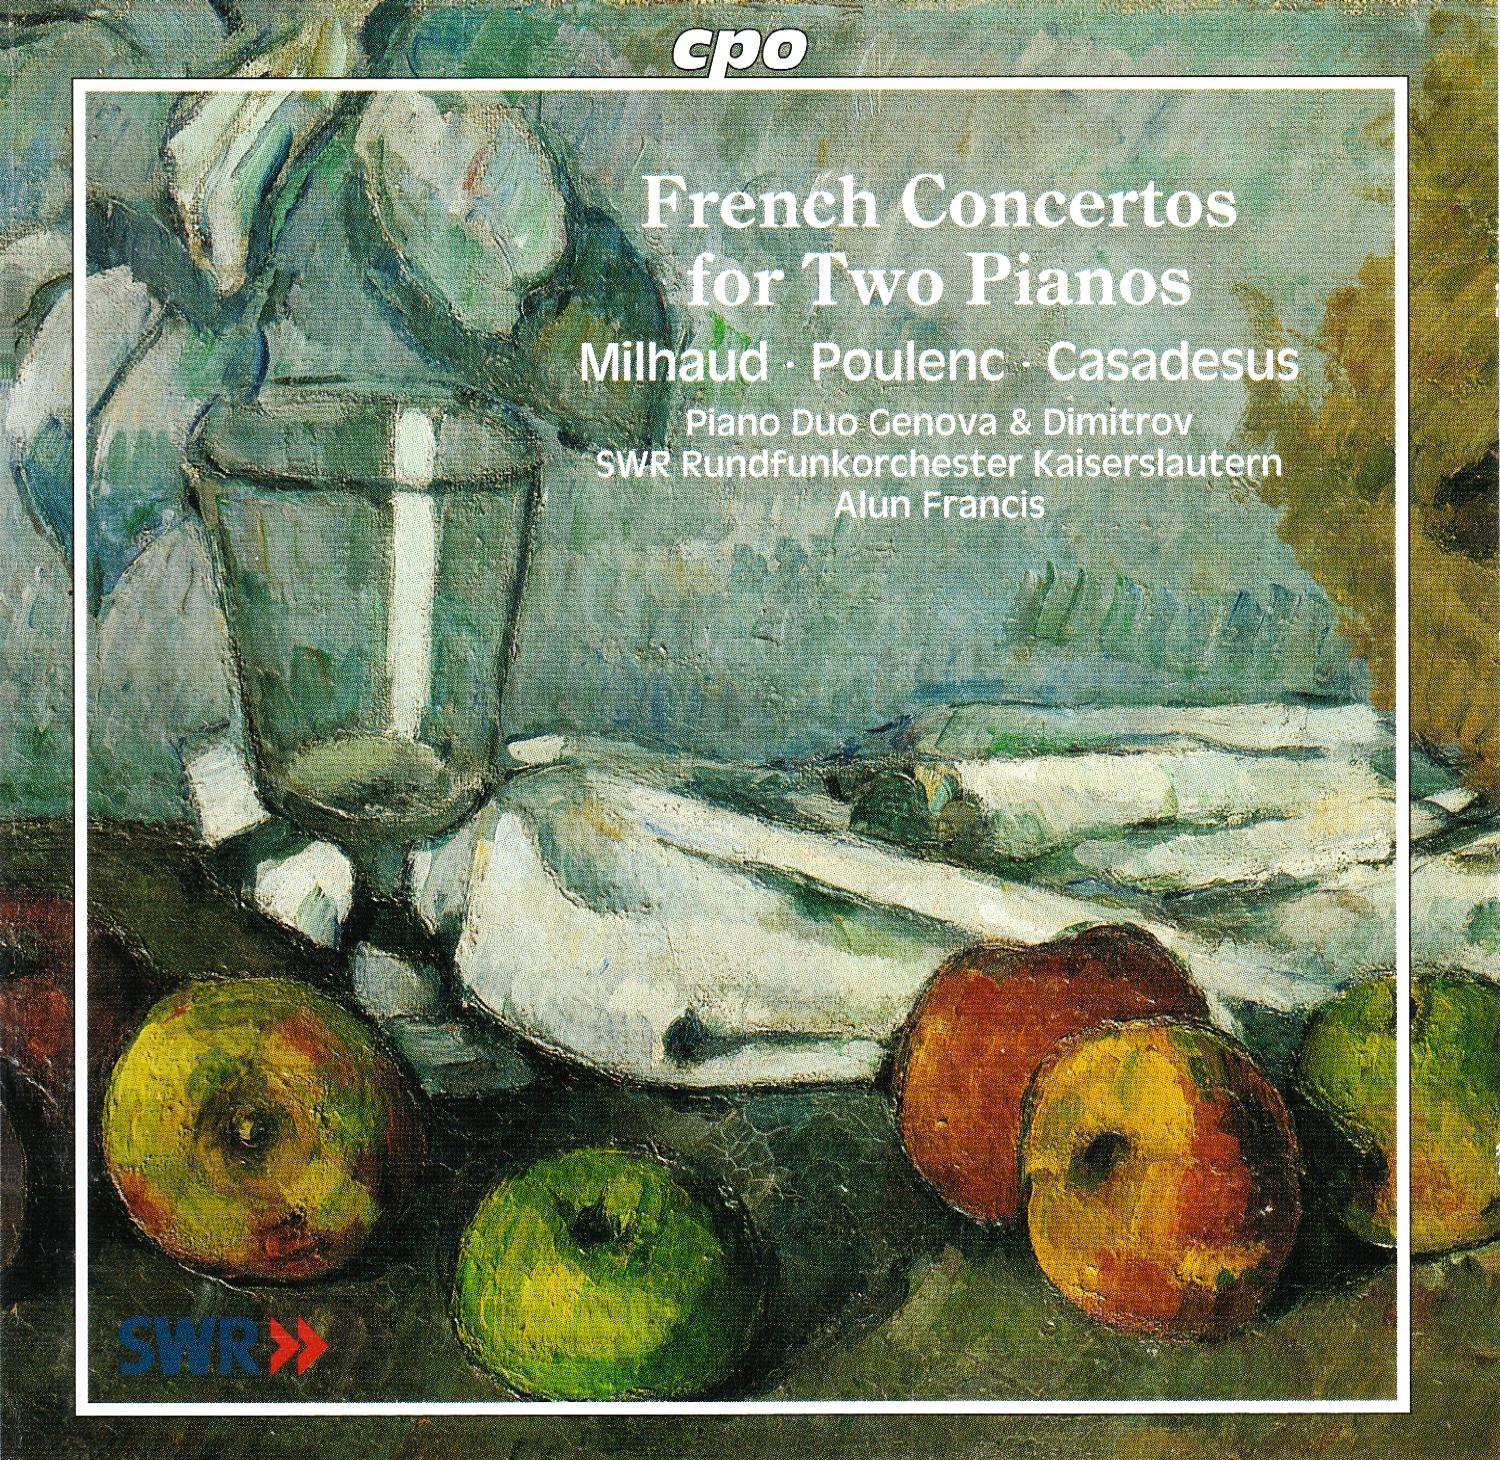 French Concertos for Two Pianos • Milhaud, Poulenc, Casadesus (cpo 999 992-2) | Cover